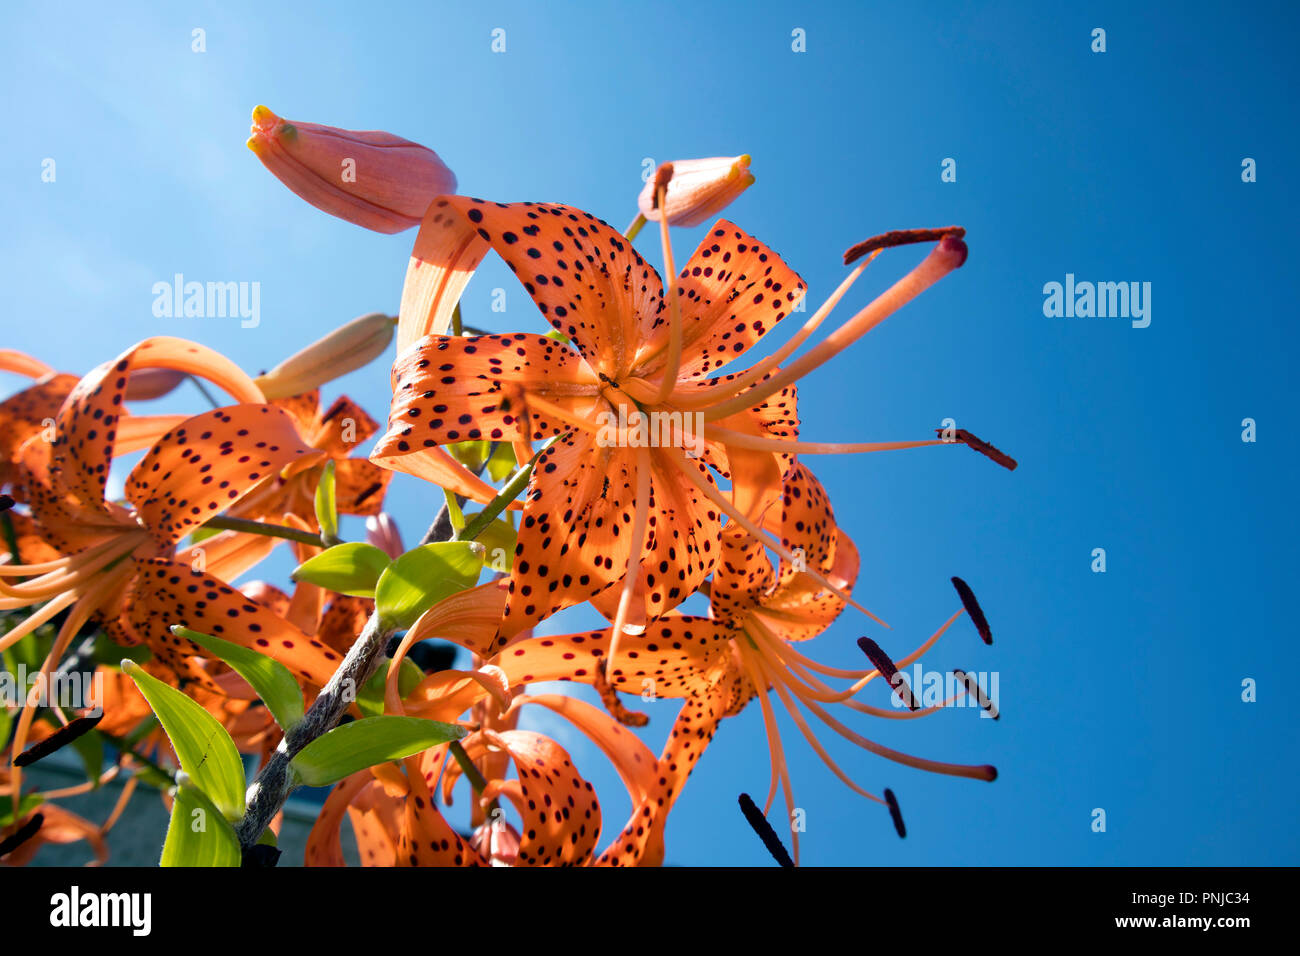 Romantico boccola crescente di Tiger Lillies con stami contro vivid blue sky Foto Stock